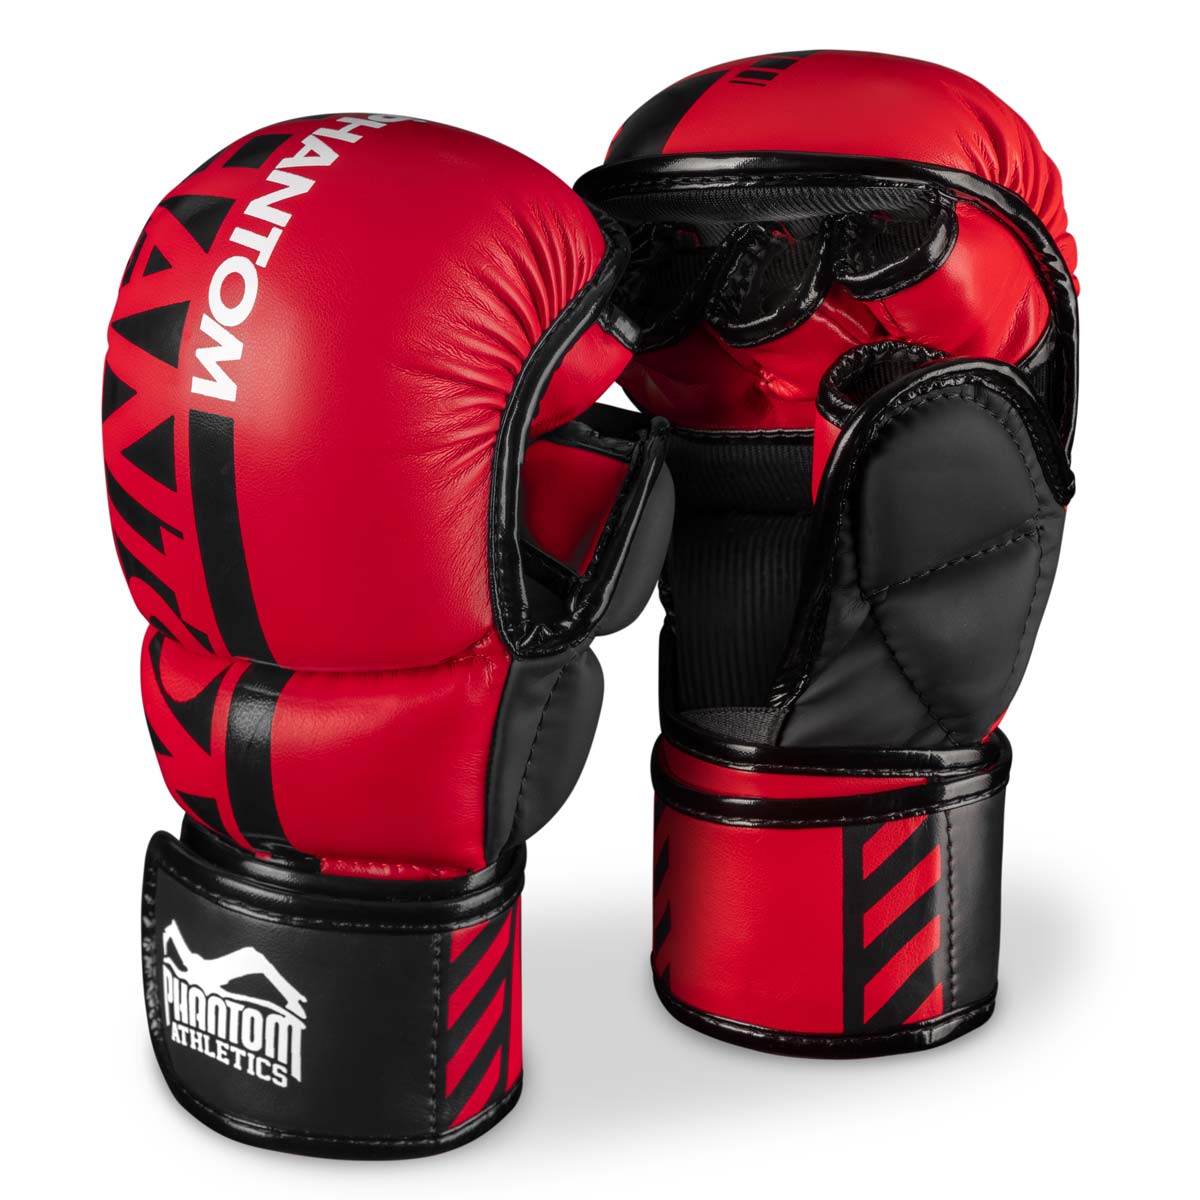 Sparingové rukavice Phantom MMA. Najbezpečnejšie rukavice pre váš tréning bojových umení. Teraz v limitovanej červenej farbe.